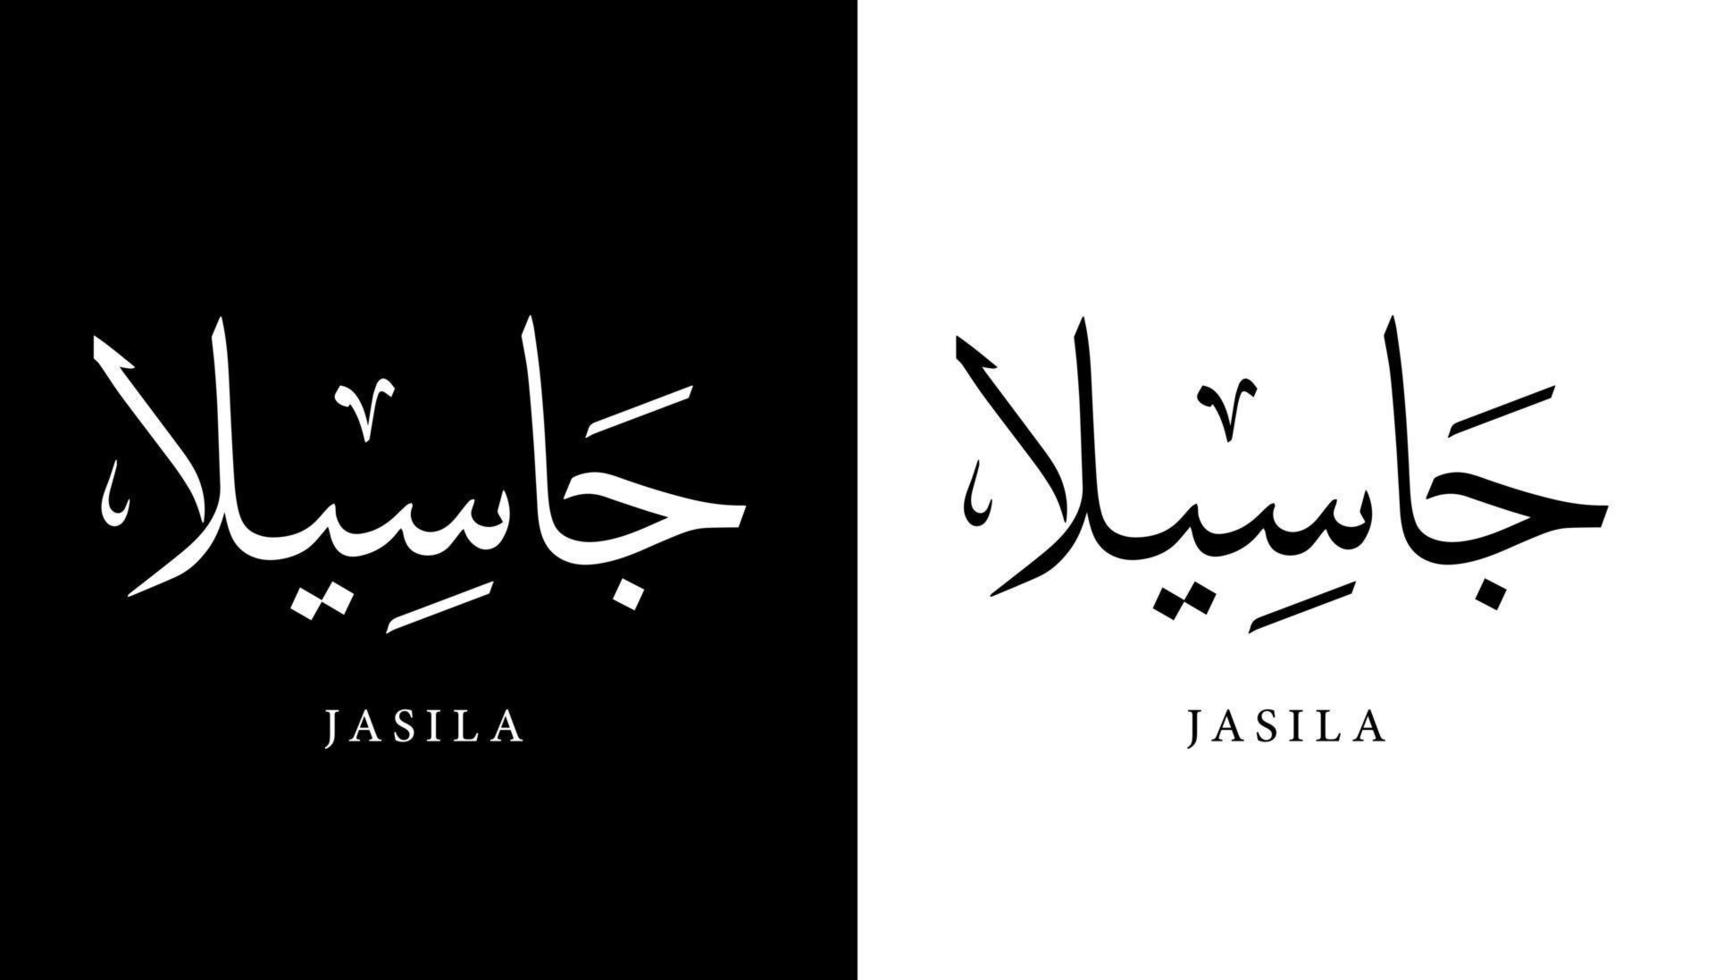 nome de caligrafia árabe traduzido 'jasila' letras árabes alfabeto fonte letras ilustração em vetor logotipo islâmico